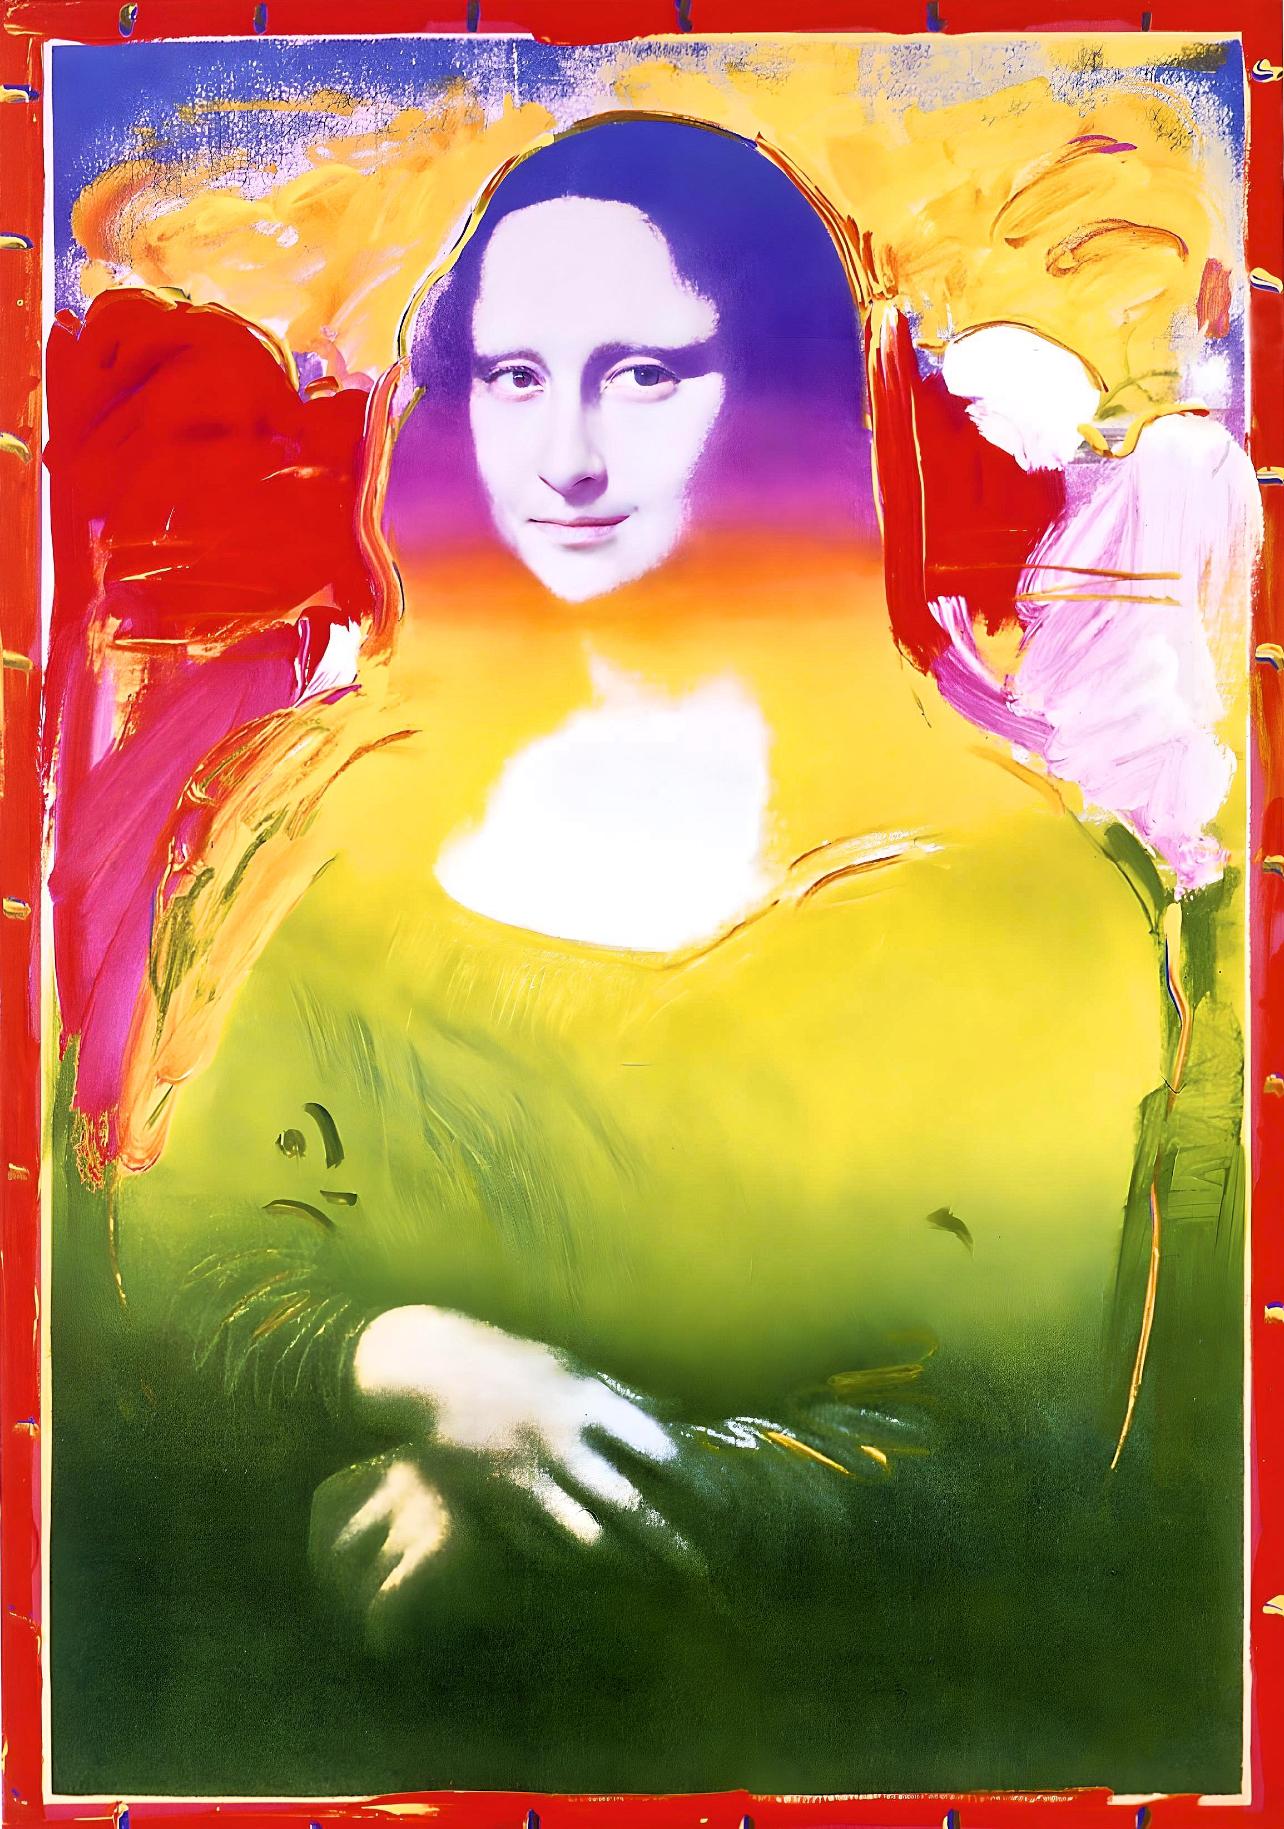 Künstler: Peter Max (1937)
Titel: Mona Lisa II
Jahr: 2003
Auflage: 500/500, plus Probedrucke
Medium: Lithographie auf Arches-Papier
Größe: 16 x 11 Zoll
Zustand: Ausgezeichnet
Beschriftung: Signiert und nummeriert vom Künstler.
Anmerkungen: